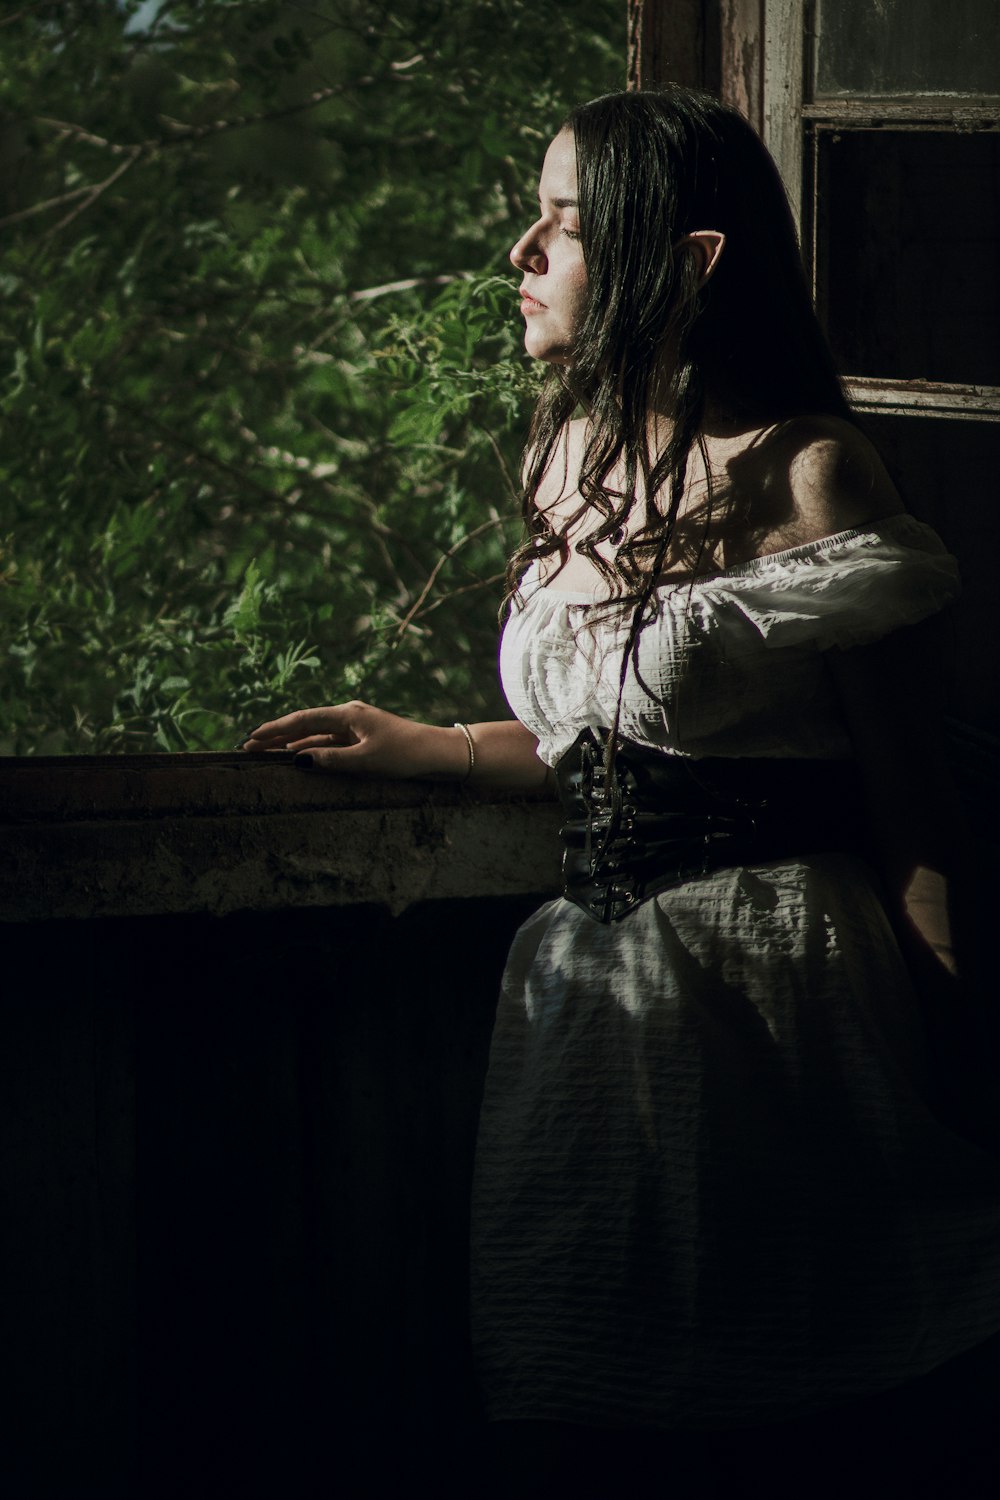 Una mujer con un vestido blanco mirando por una ventana